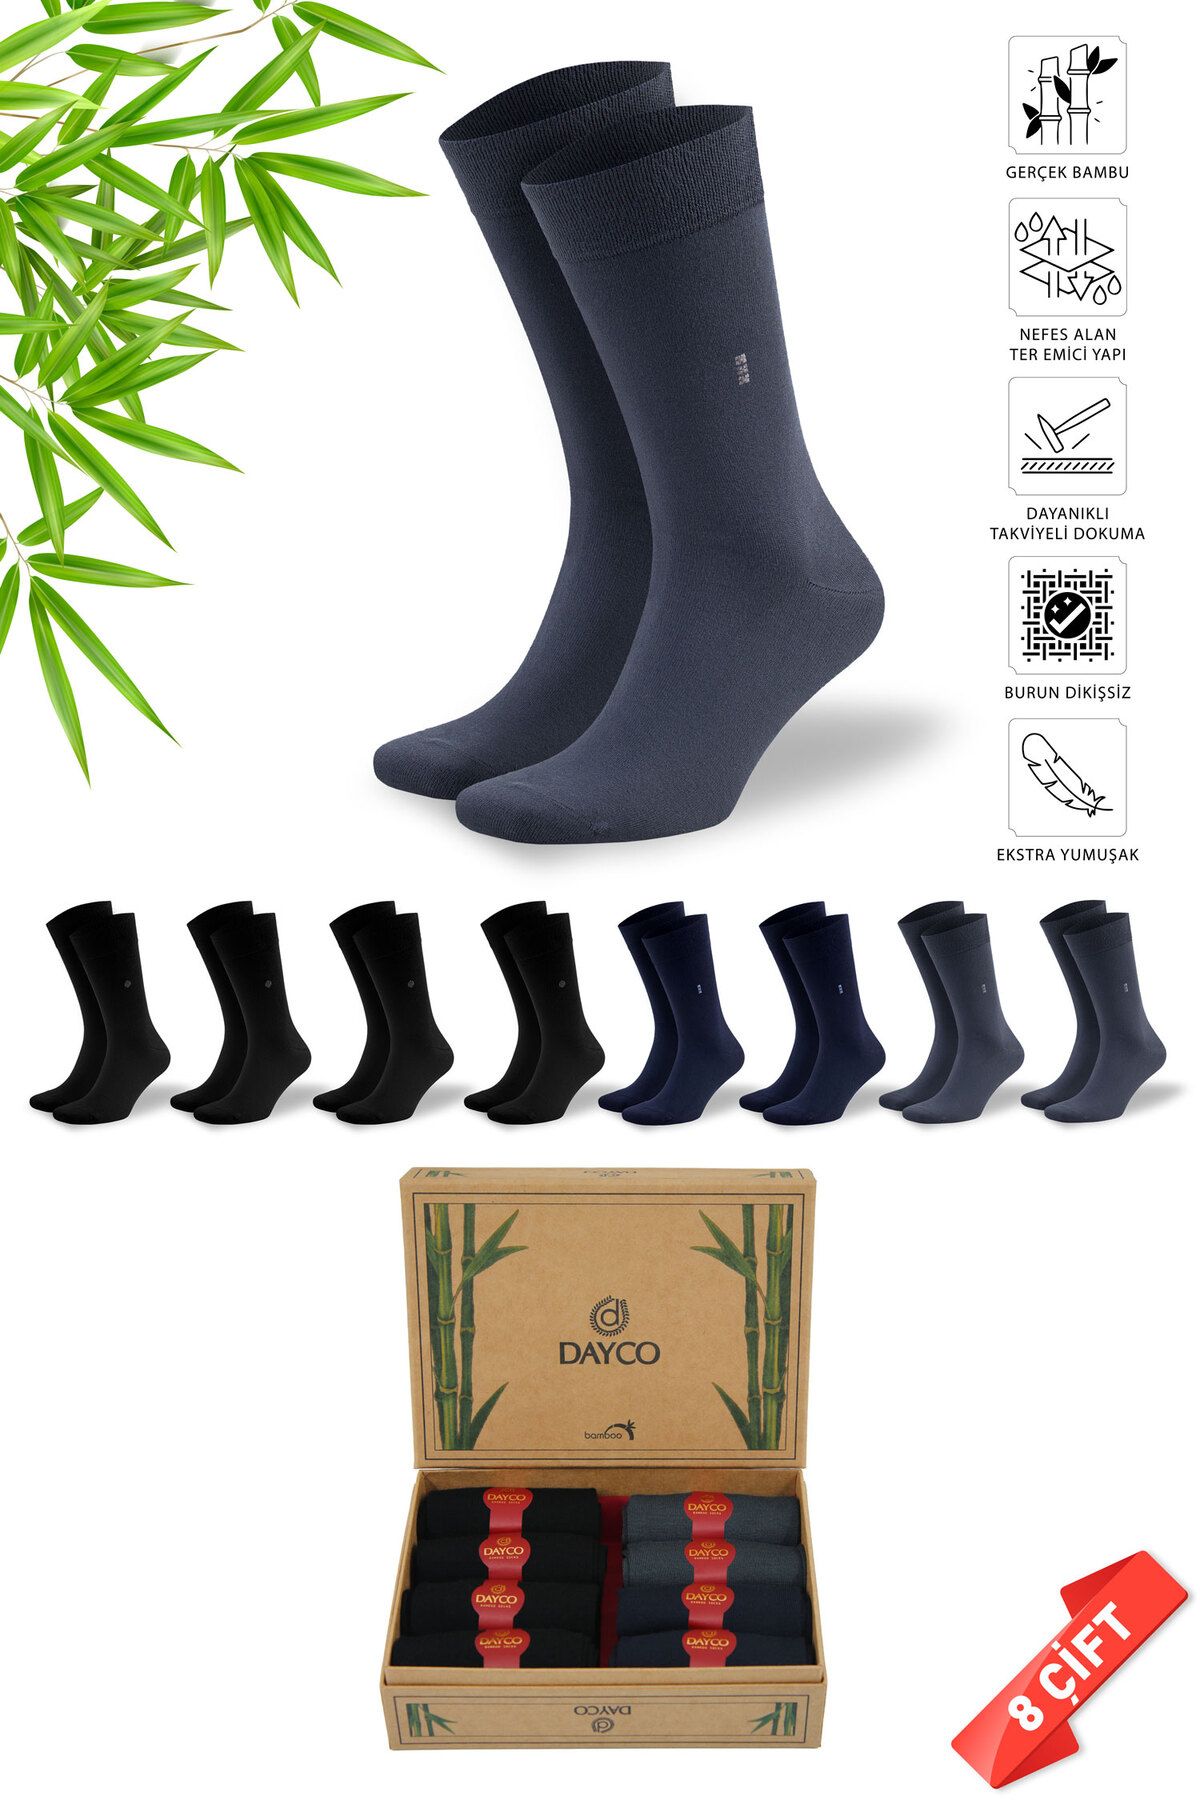 DAYCO Premium Dikişsiz Yazlık Bambu Çorap 8'li Set Kraft Kutulu 4 Siyah 2 Lacivert 2 Füme - 477 - 41-44